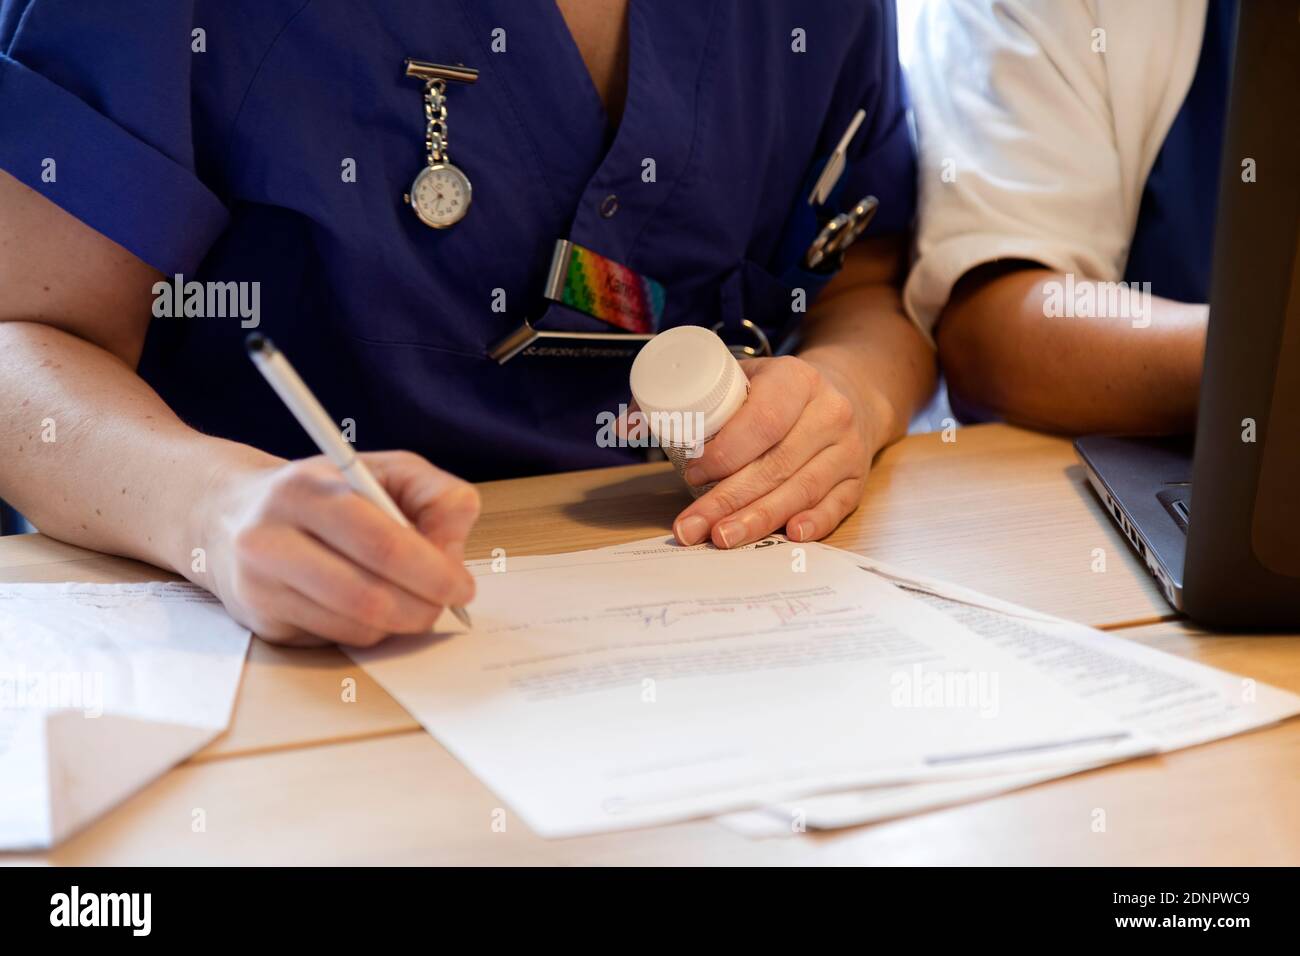 Les infirmières écrivent à la main Banque D'Images